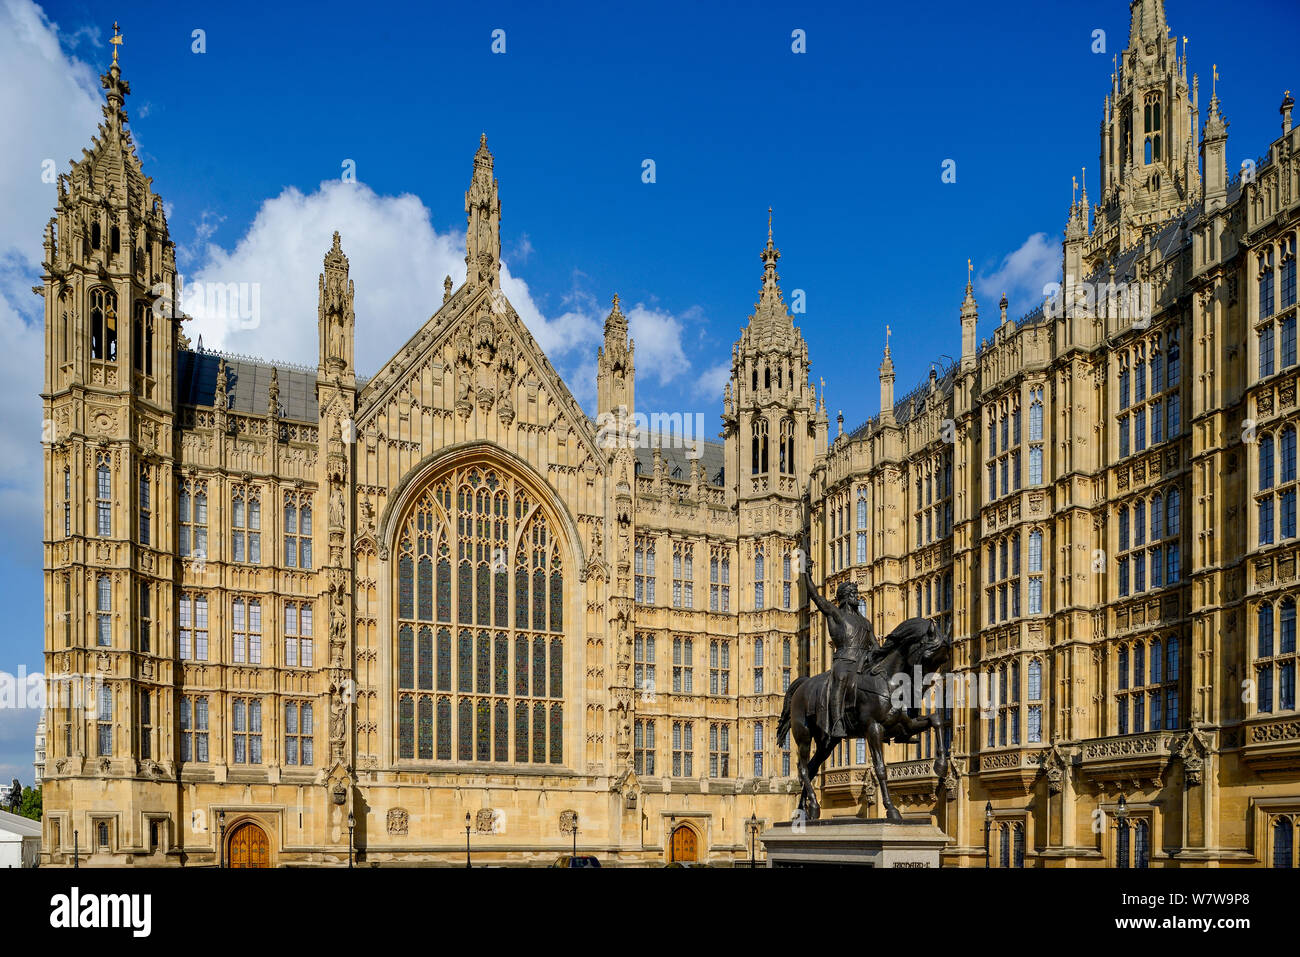 Blauer Himmel über den Palast von Westminster und das Alte Schloss Hof mit der Statue von Richard Löwenherz Stockfoto